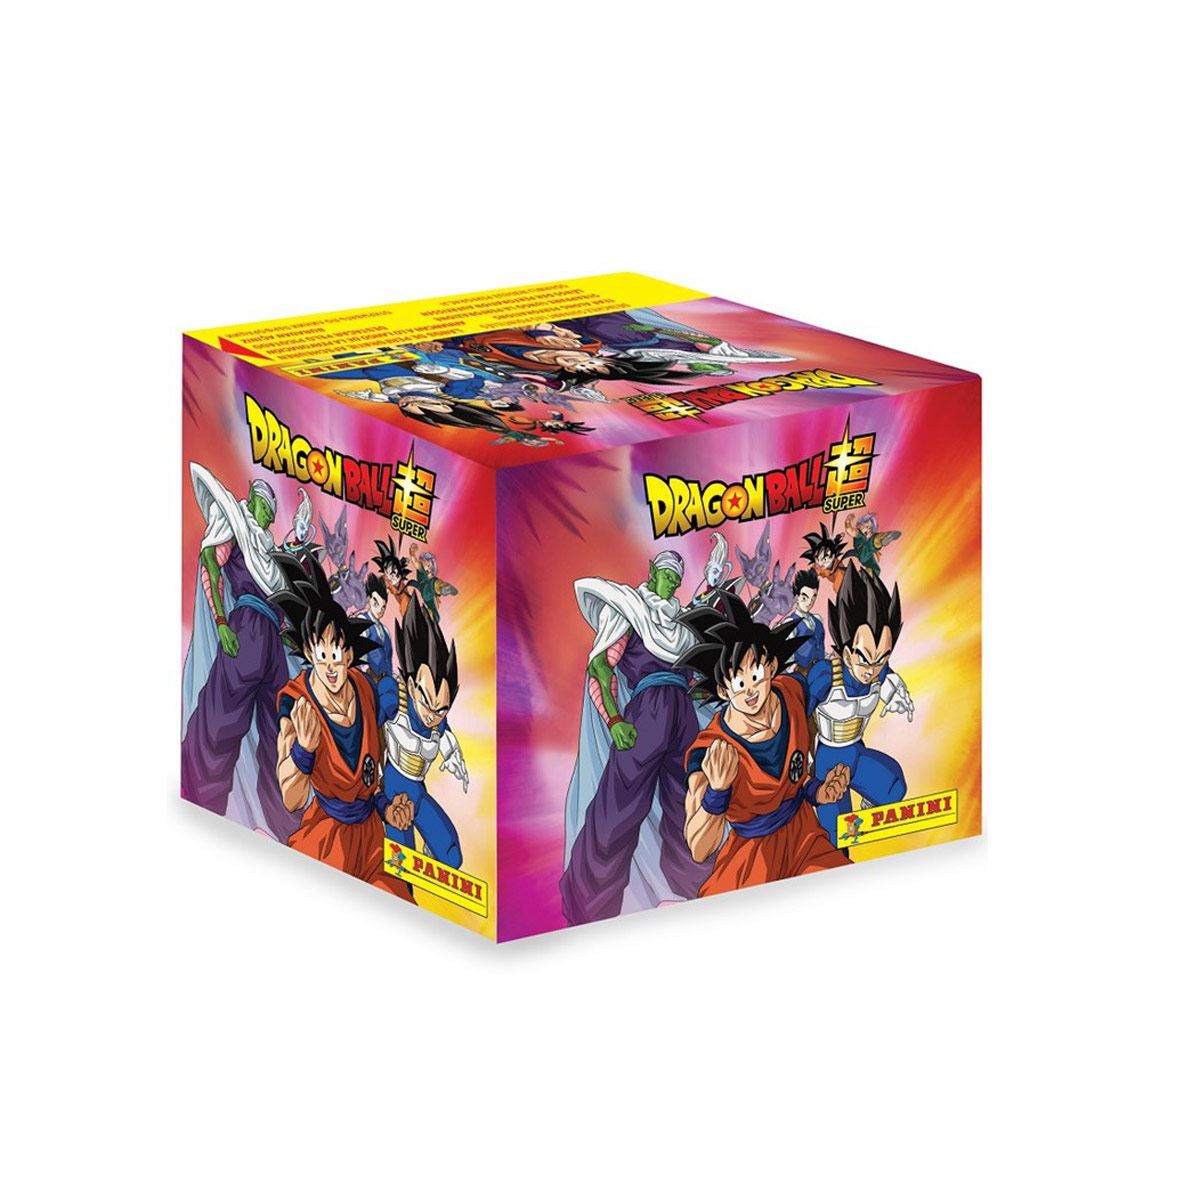 50 Sobres del álbum Dragon Ball Super vol. 2 oficial de Panini